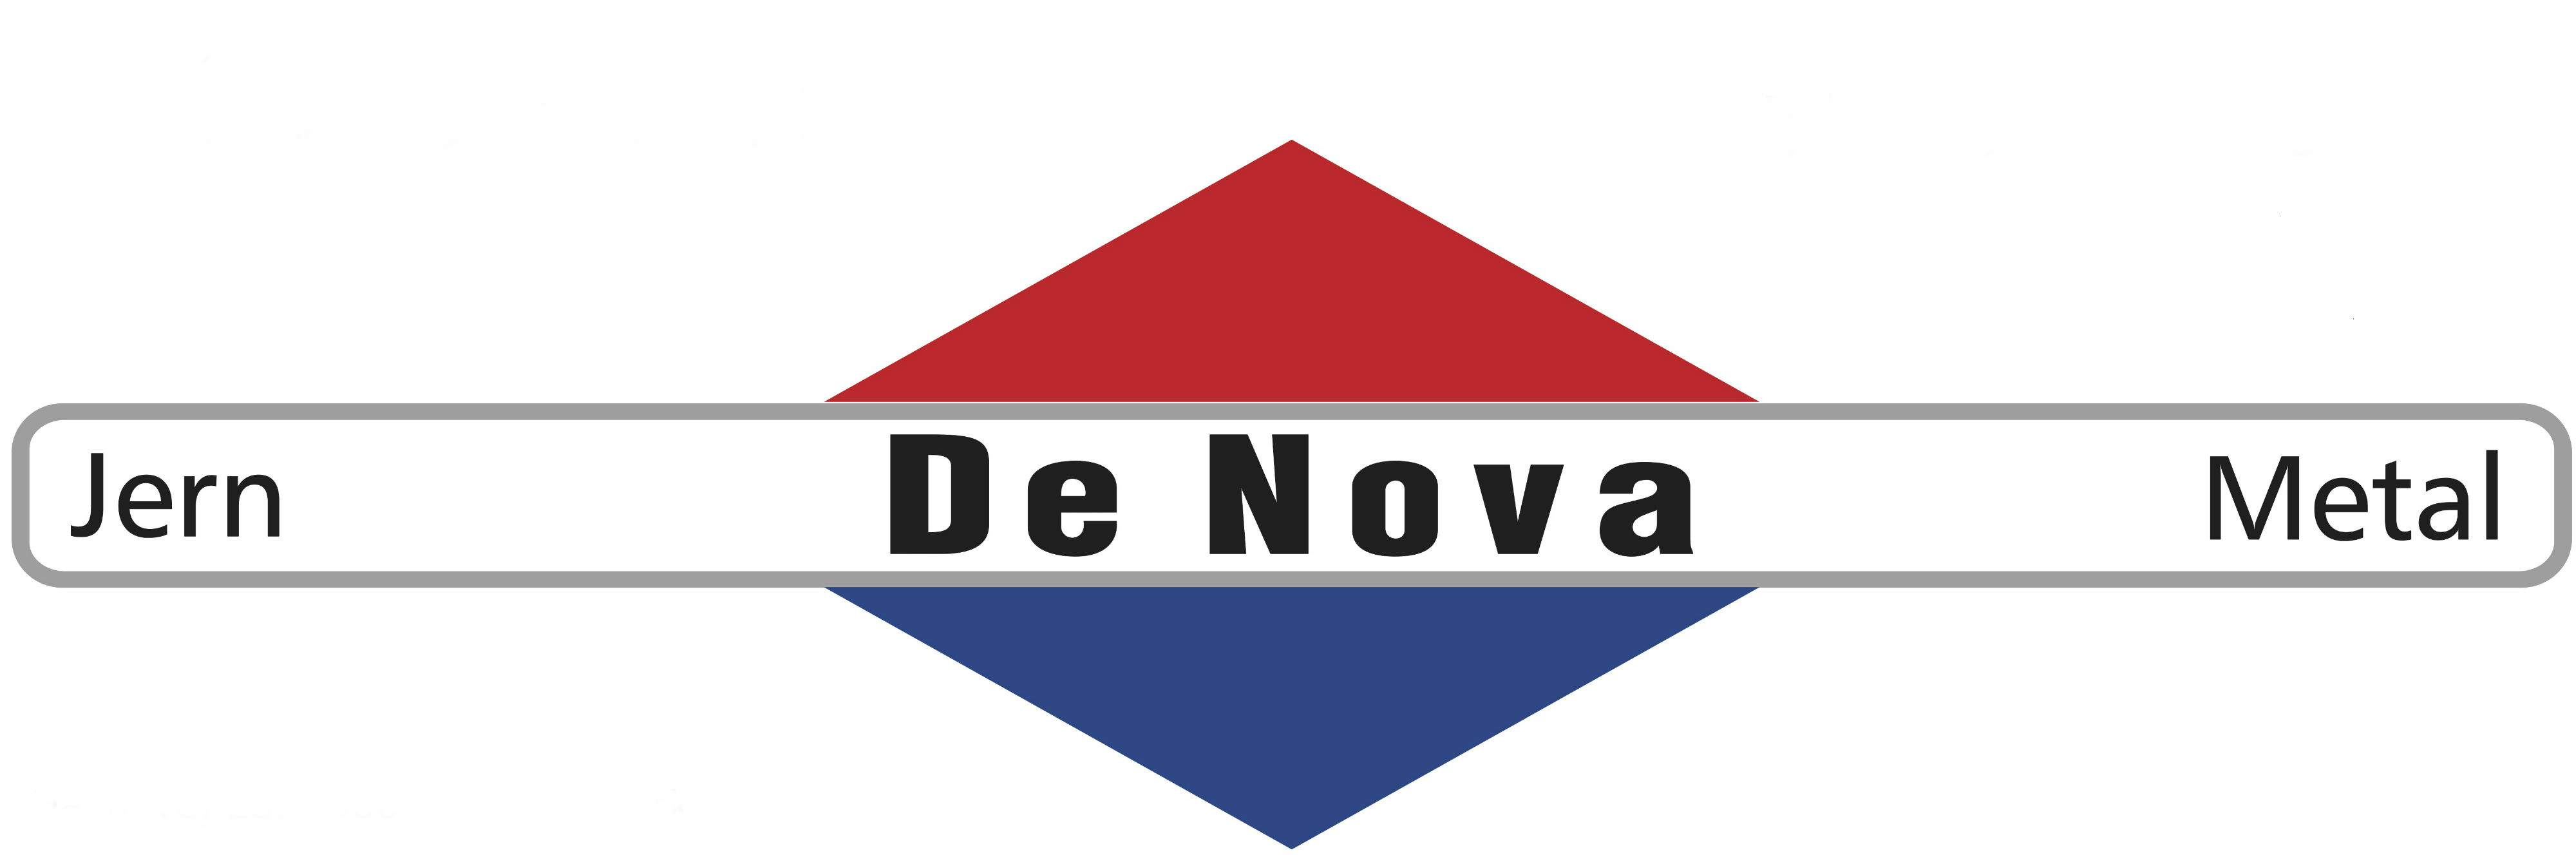 Denova logo jern og metal copy.png